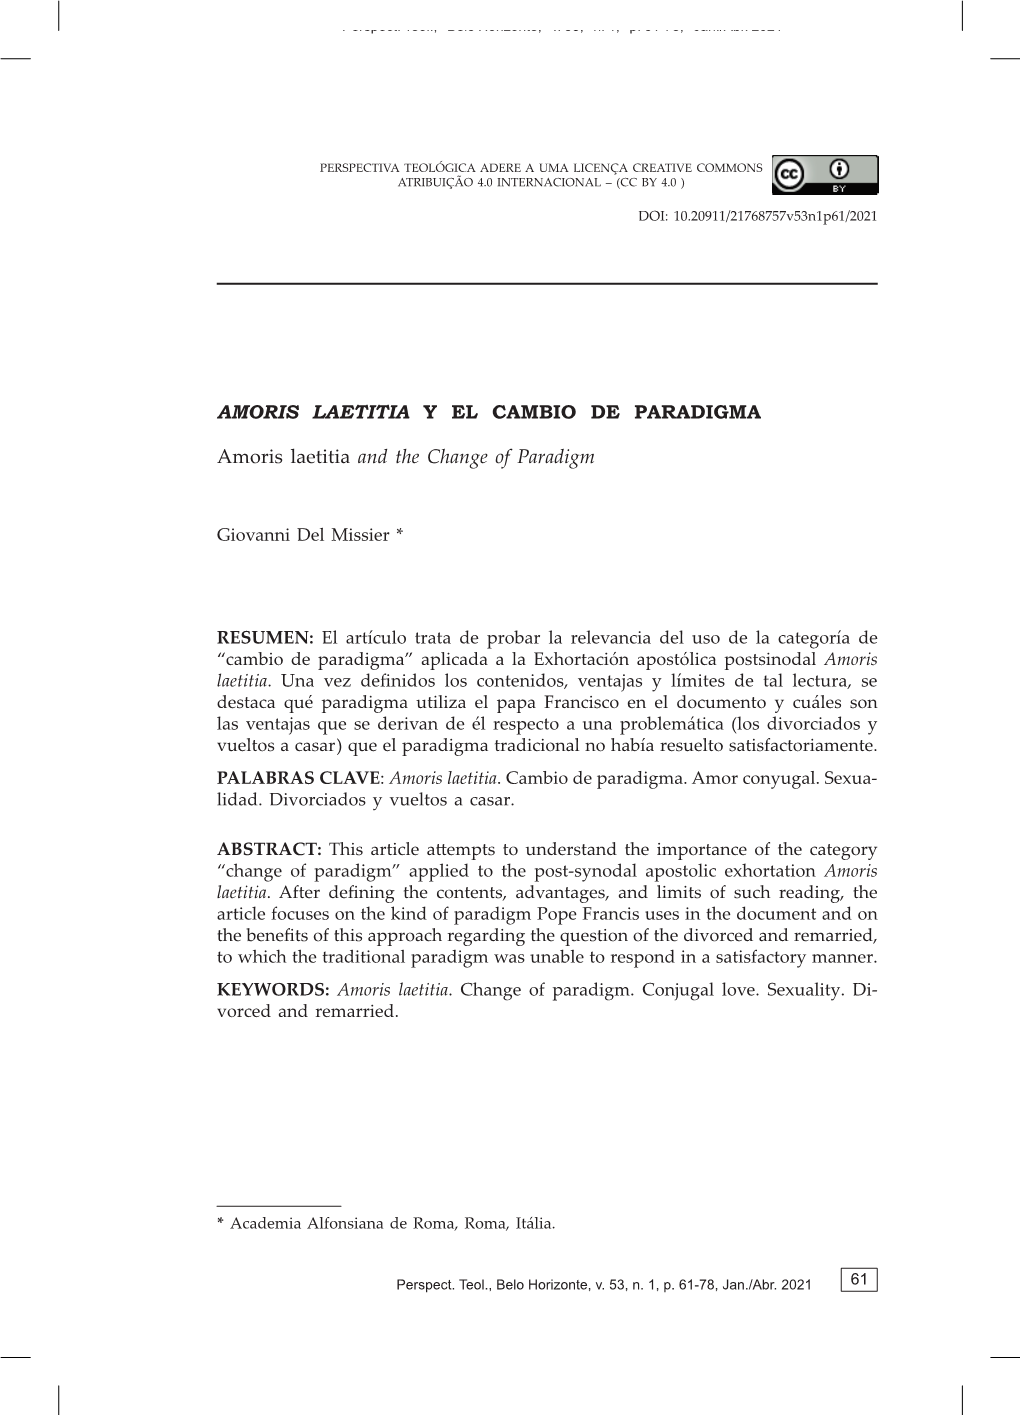 Amoris Laetitia and the Change of Paradigm